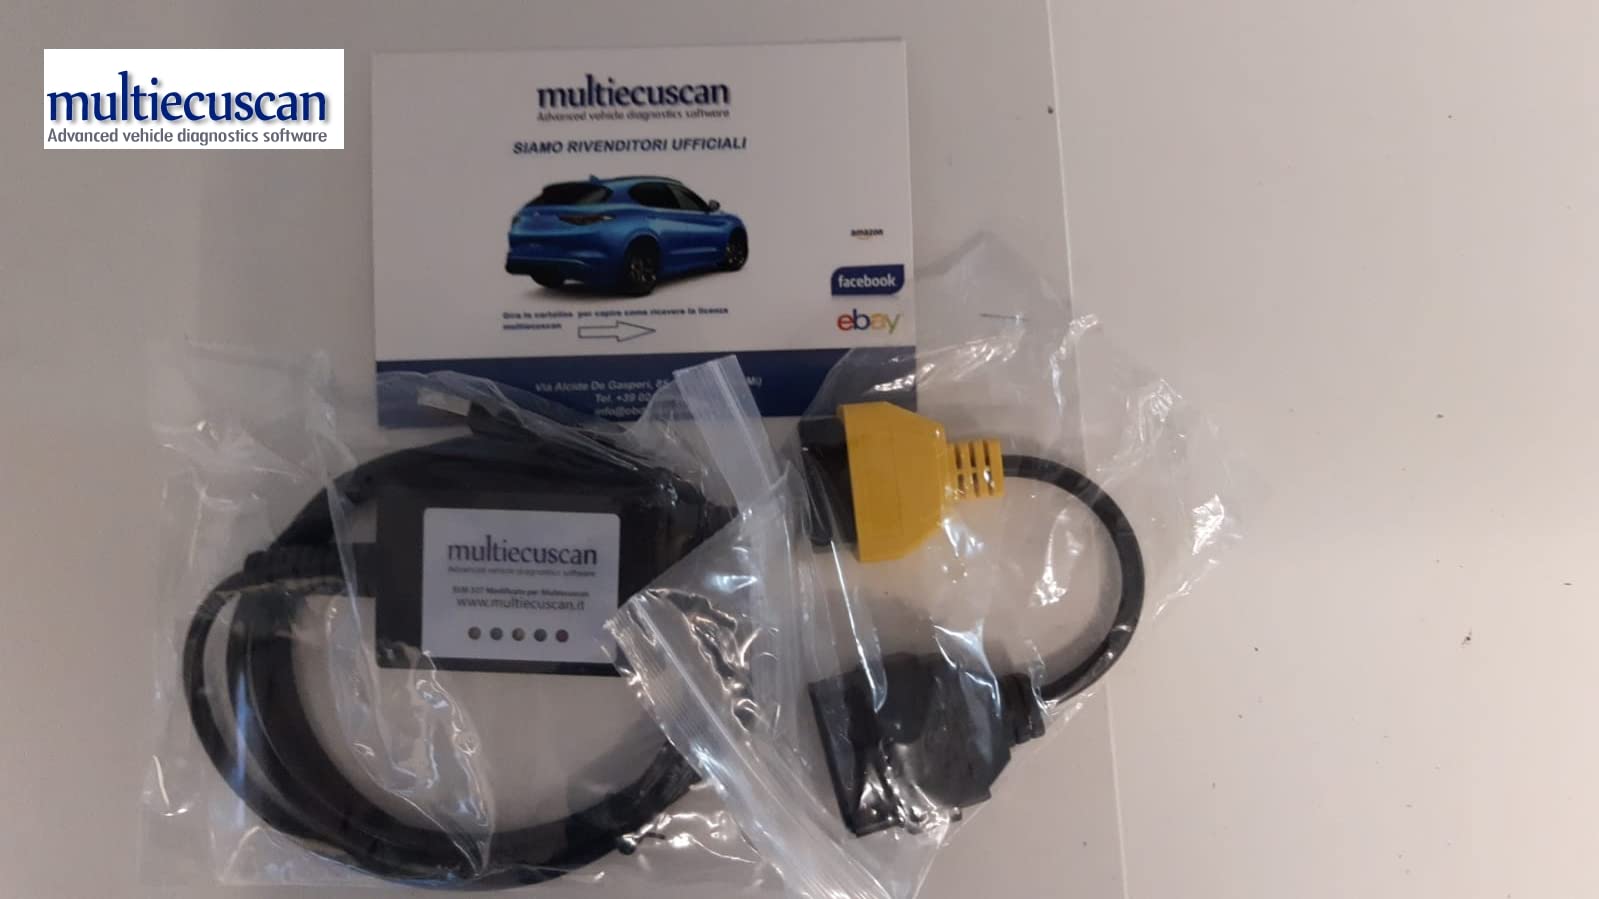 multiecuscan Modifizierte Elm Can + Lizenz für Service in Italienisch 327 + 3 Punto Mito Giulietta von multiecuscan